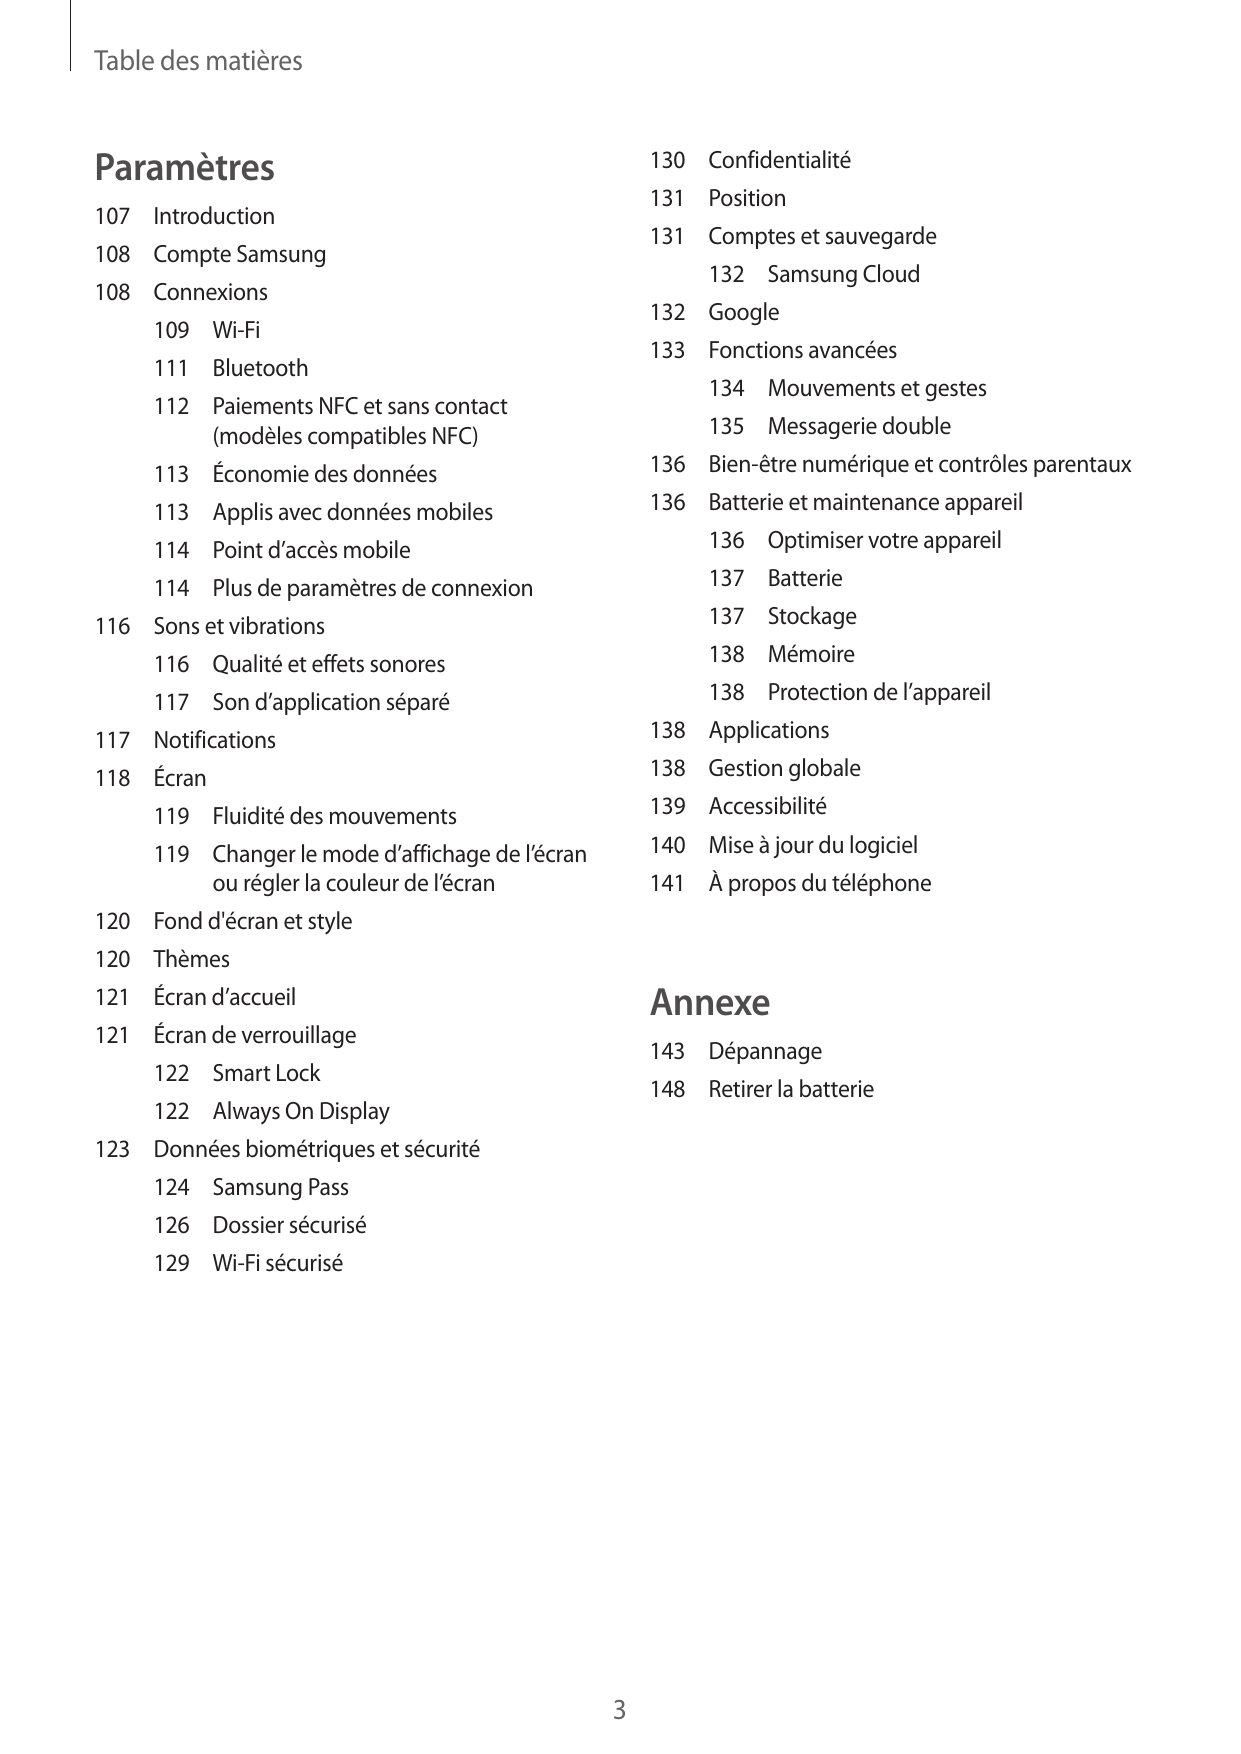 Table des matièresParamètres130Confidentialité131Position107Introduction131 Comptes et sauvegarde108 Compte Samsung132 Samsung C